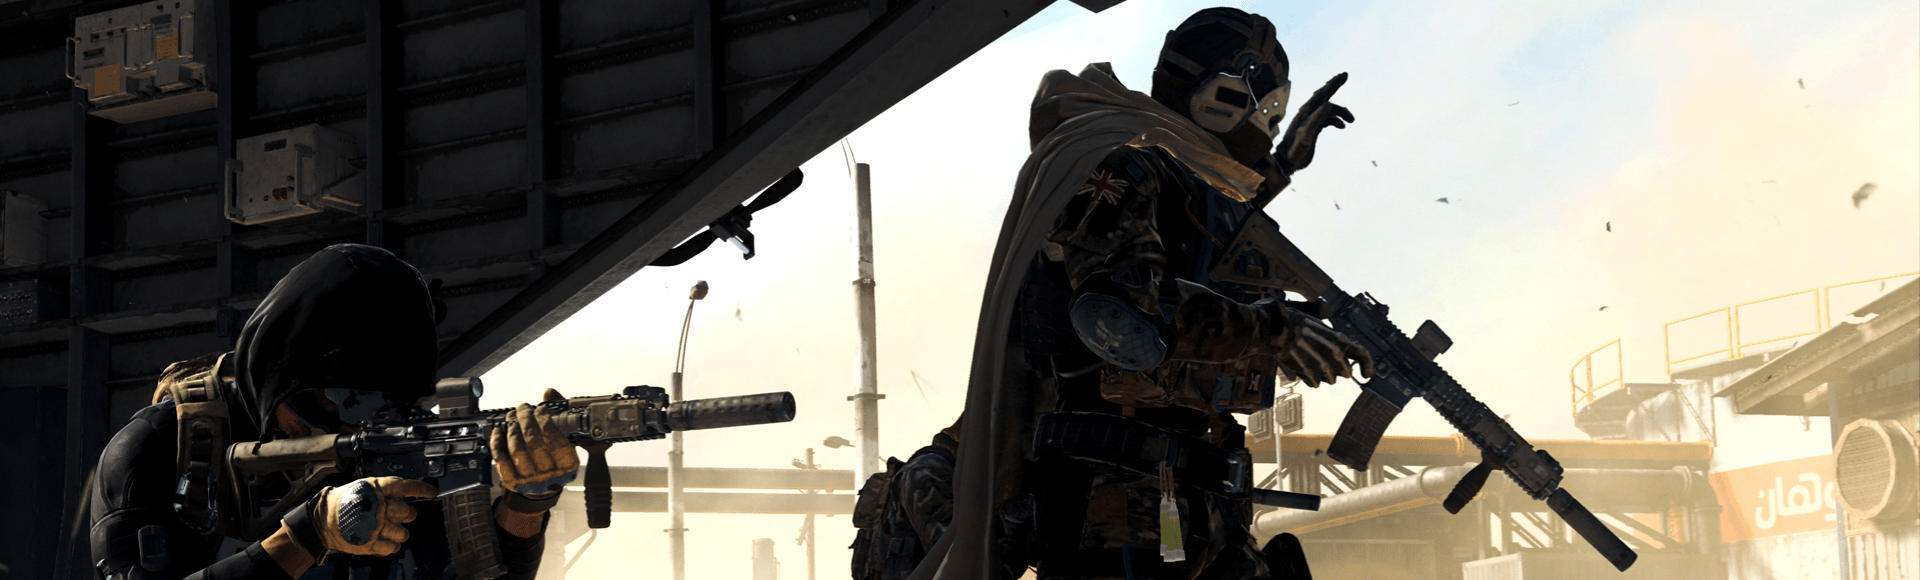 Requisitos de sistema para Call of Duty: Warzone no PC